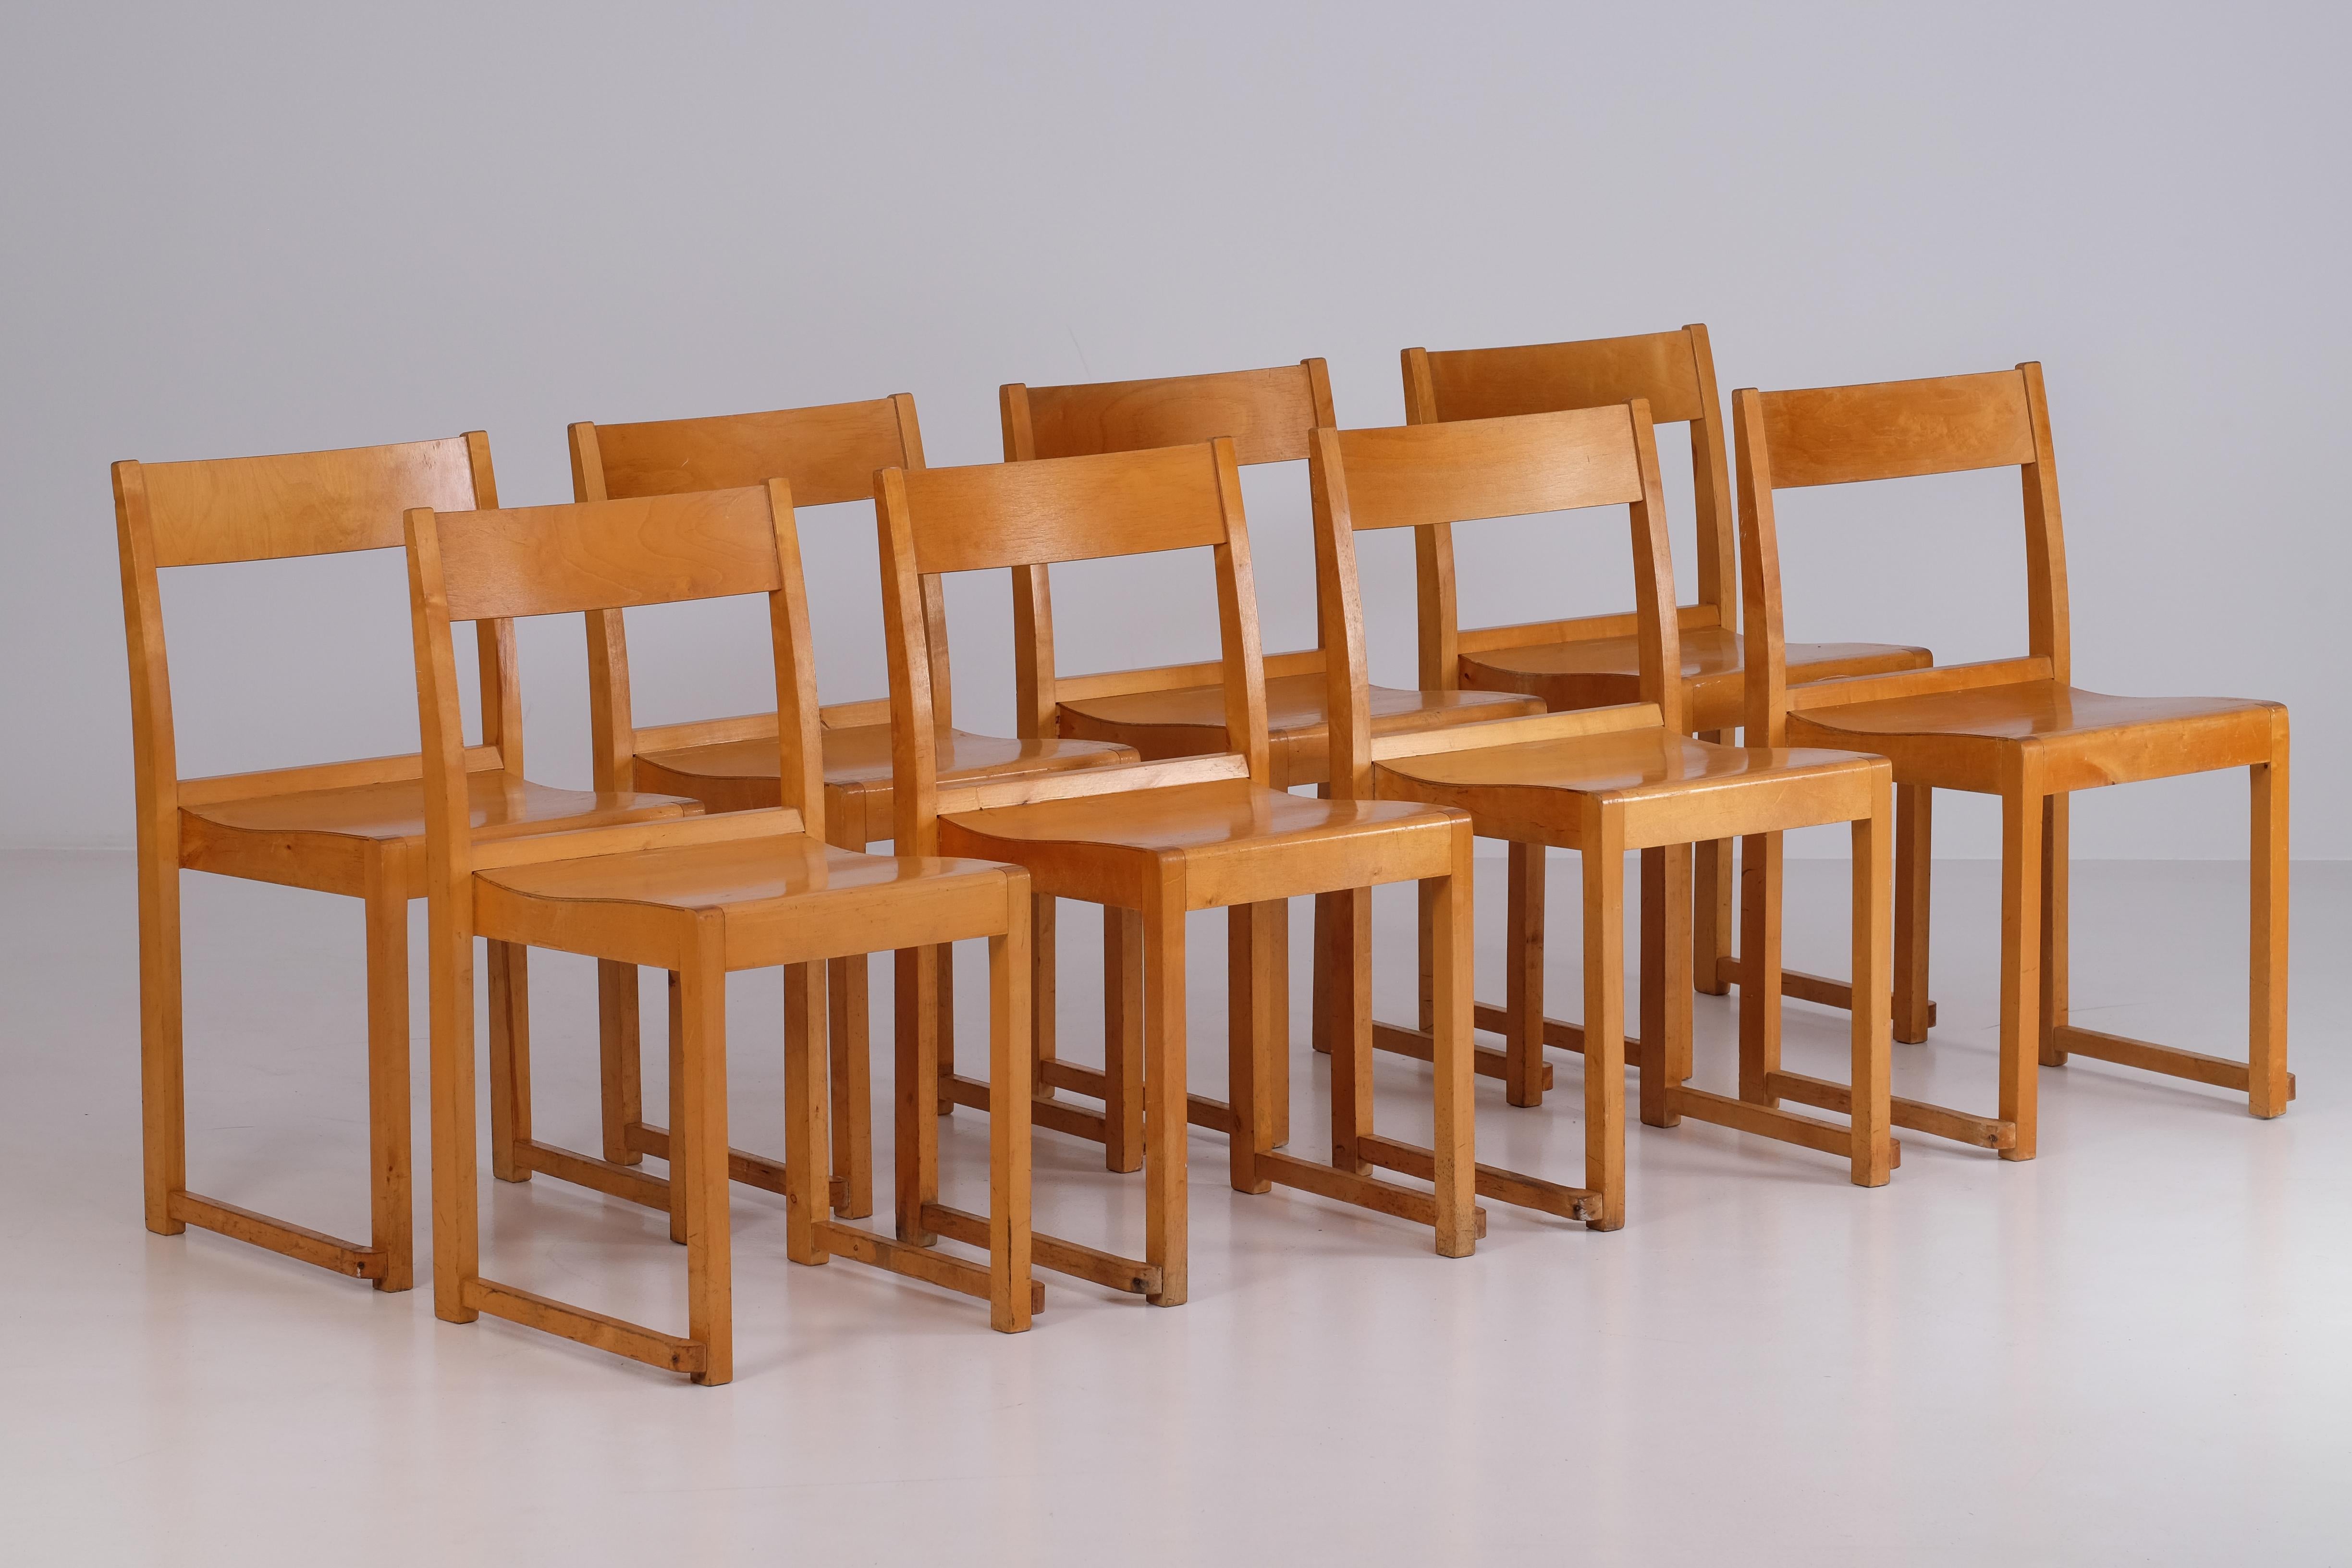 Ensemble de 8 chaises 'Orkesterstolen' par Sven Markelius, Suède, années 1940. 
Les chaises ont été conçues à l'origine pour la salle de concert d'Helsingborg.